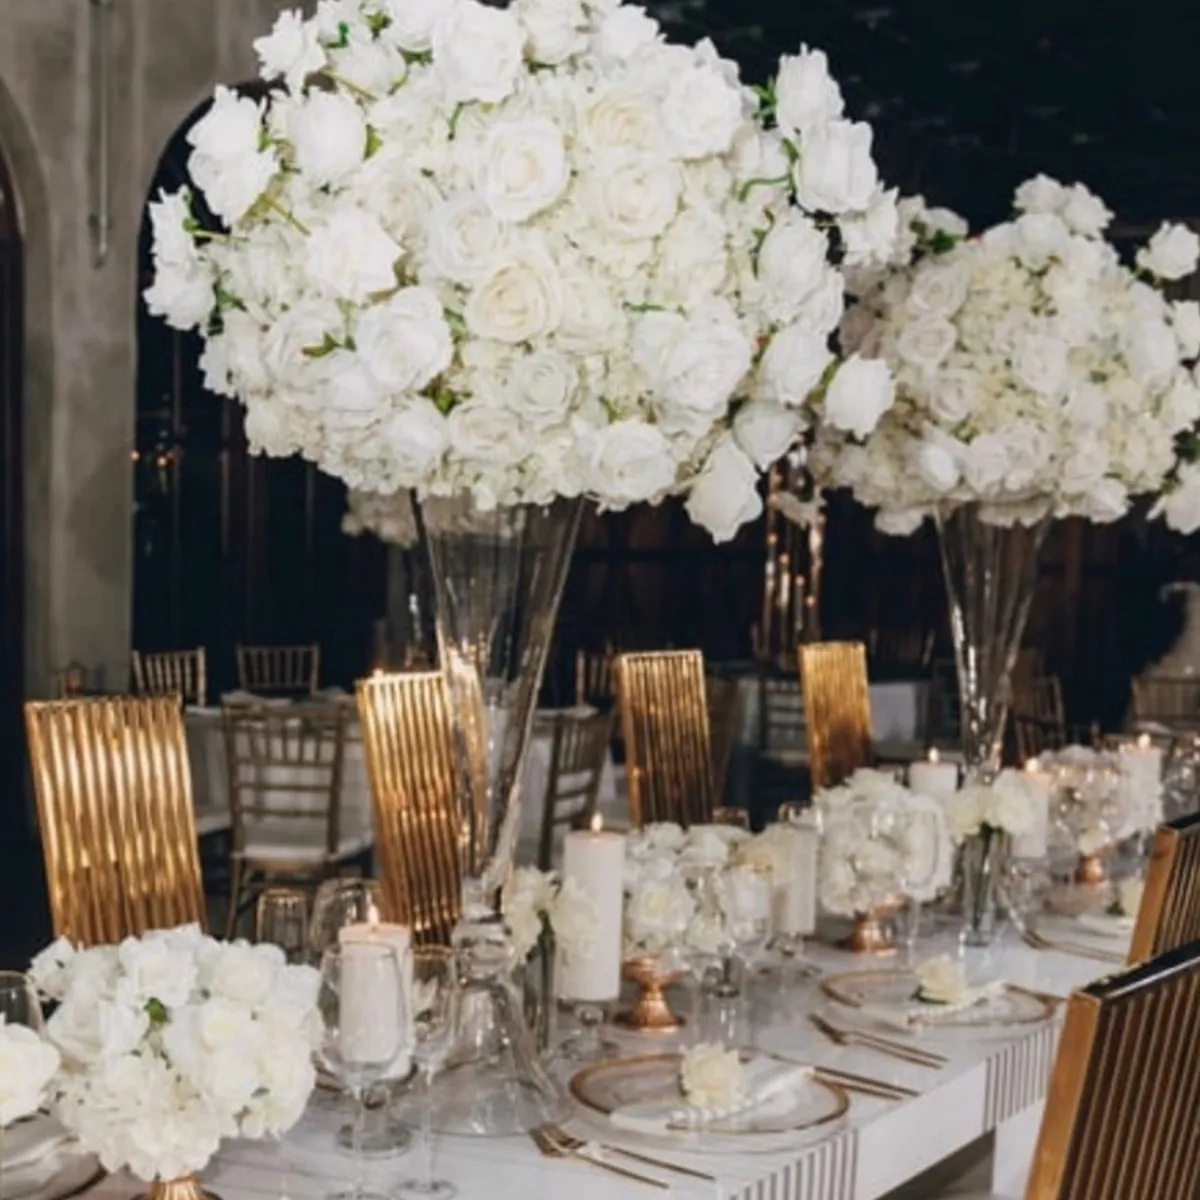 Прозрачные высокие прозрачные хрустальные стеклянные конусообразные вазы для свадьбы, домашний декор, центральный элемент стола, подставка для цветов, центральный нижний шар для декора свадебной вечеринки, мероприятия